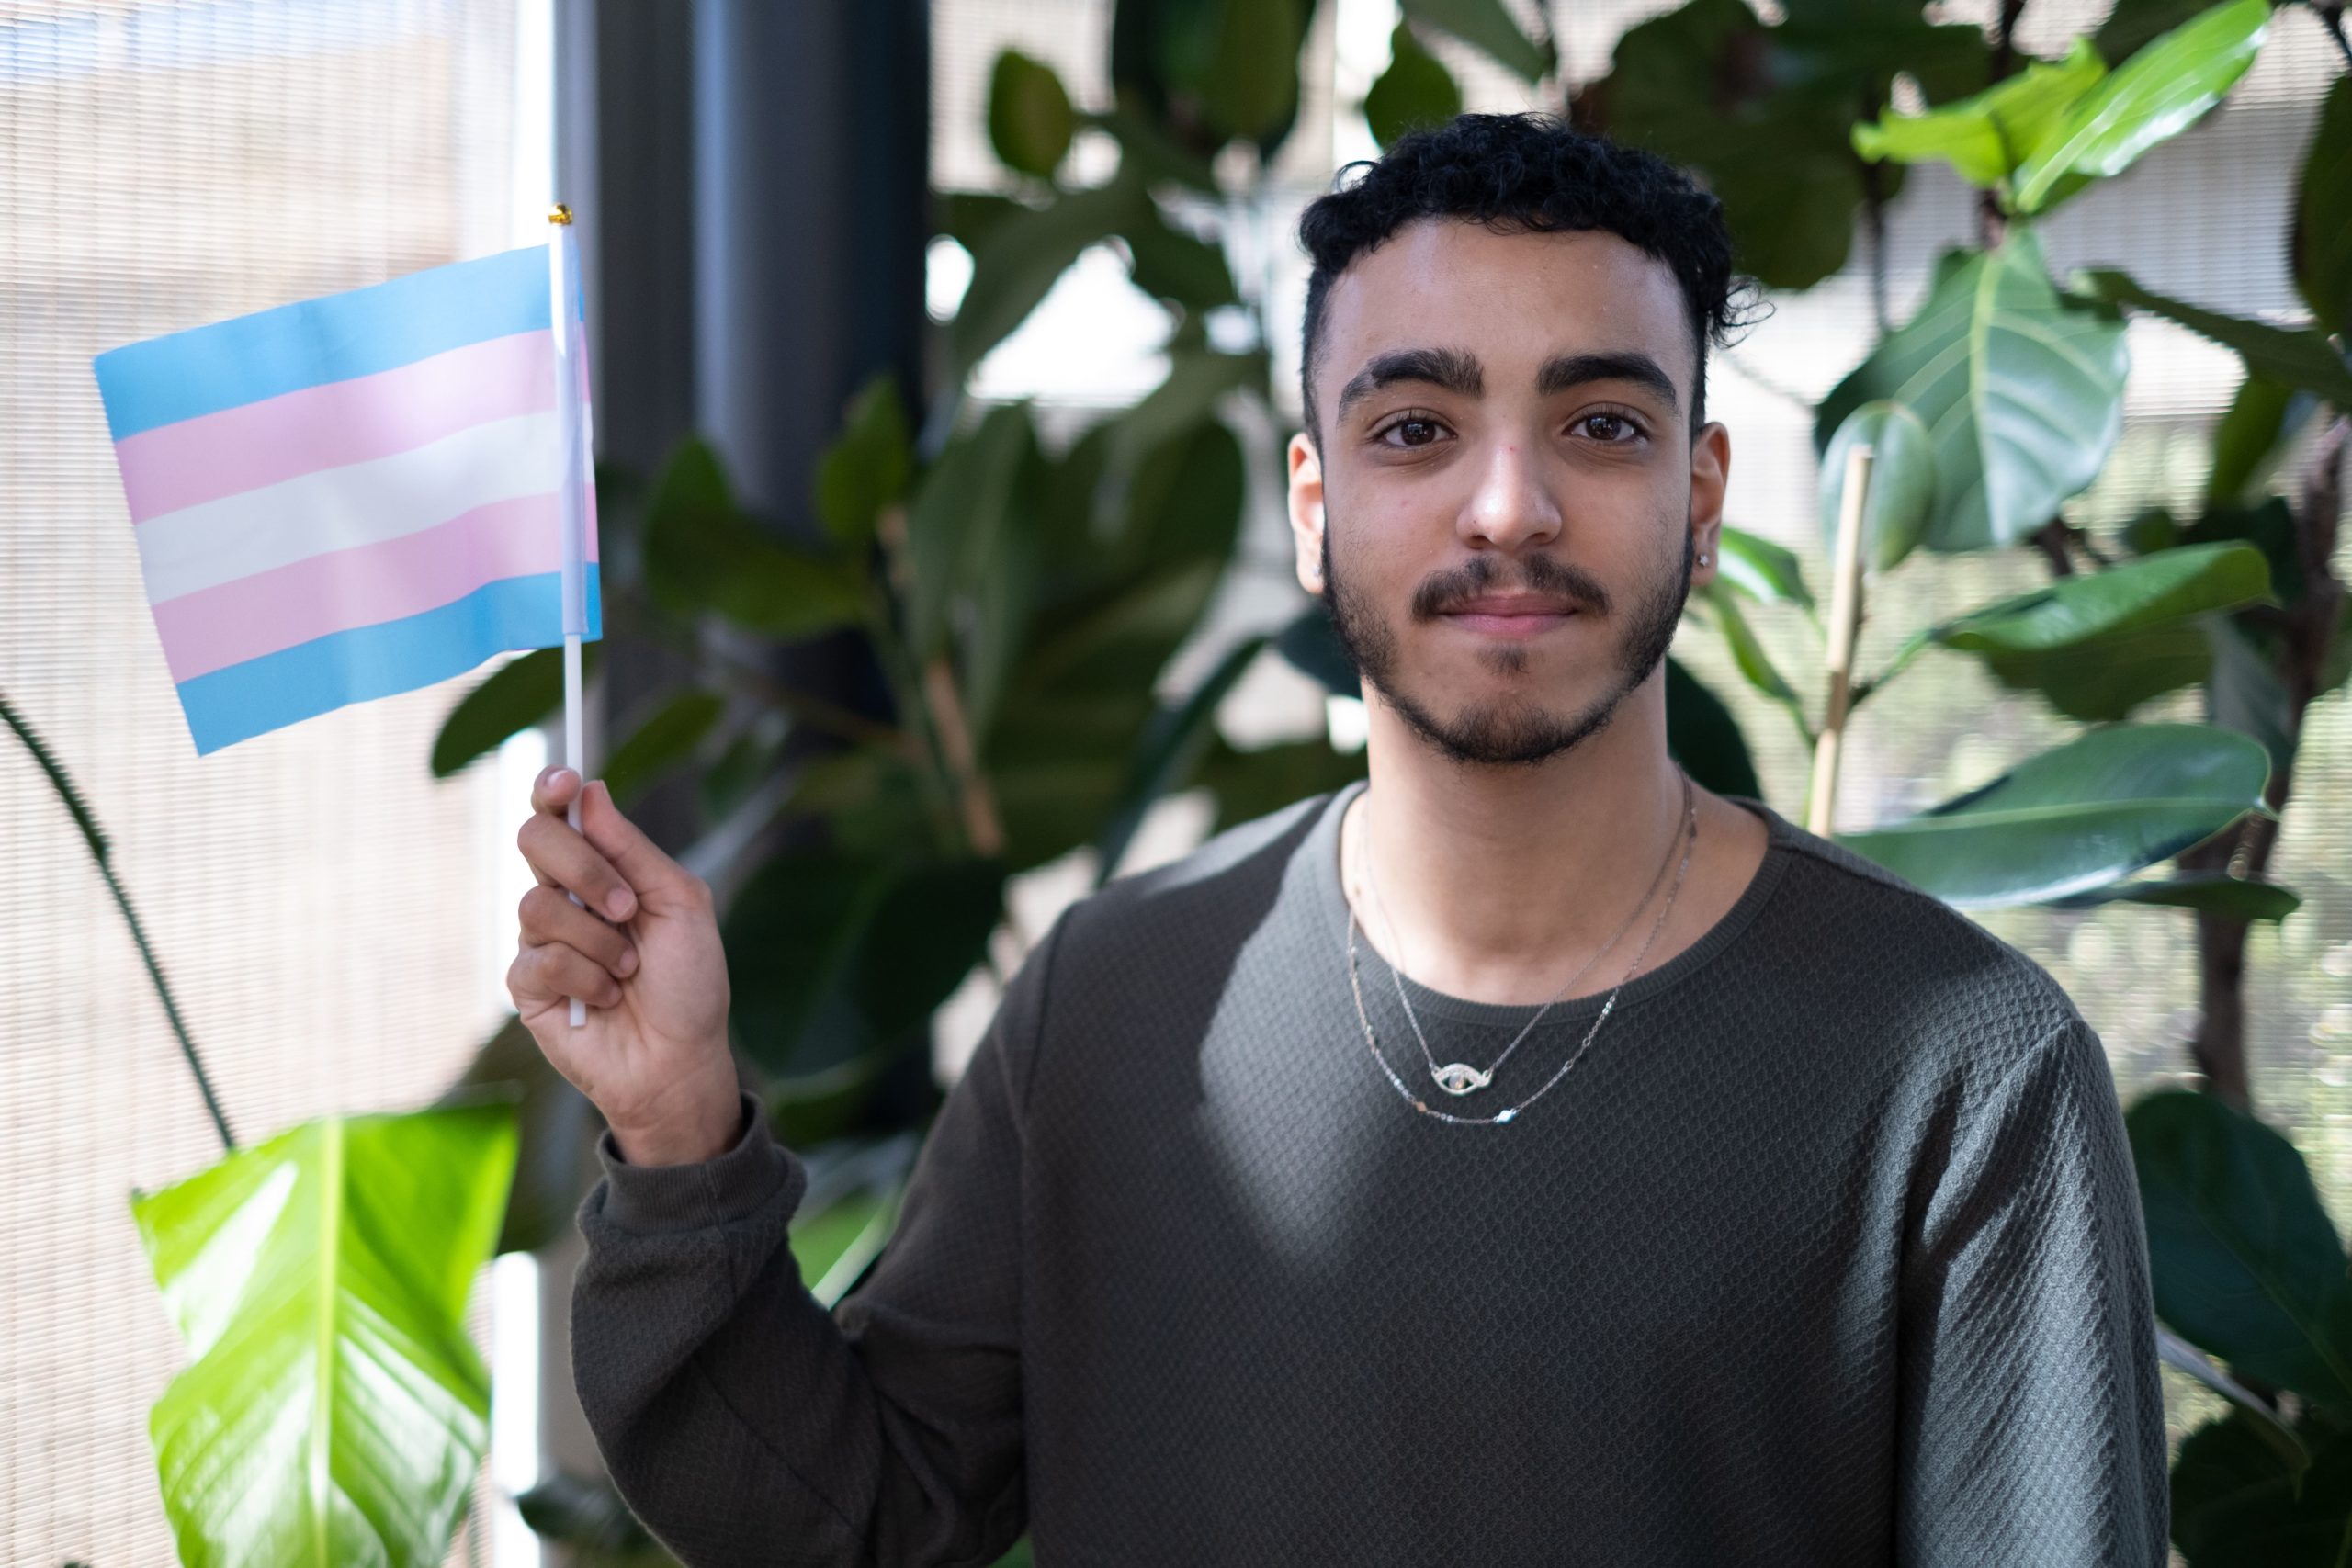 Isaac, a Just Like Us ambassador, waving a transgender flag